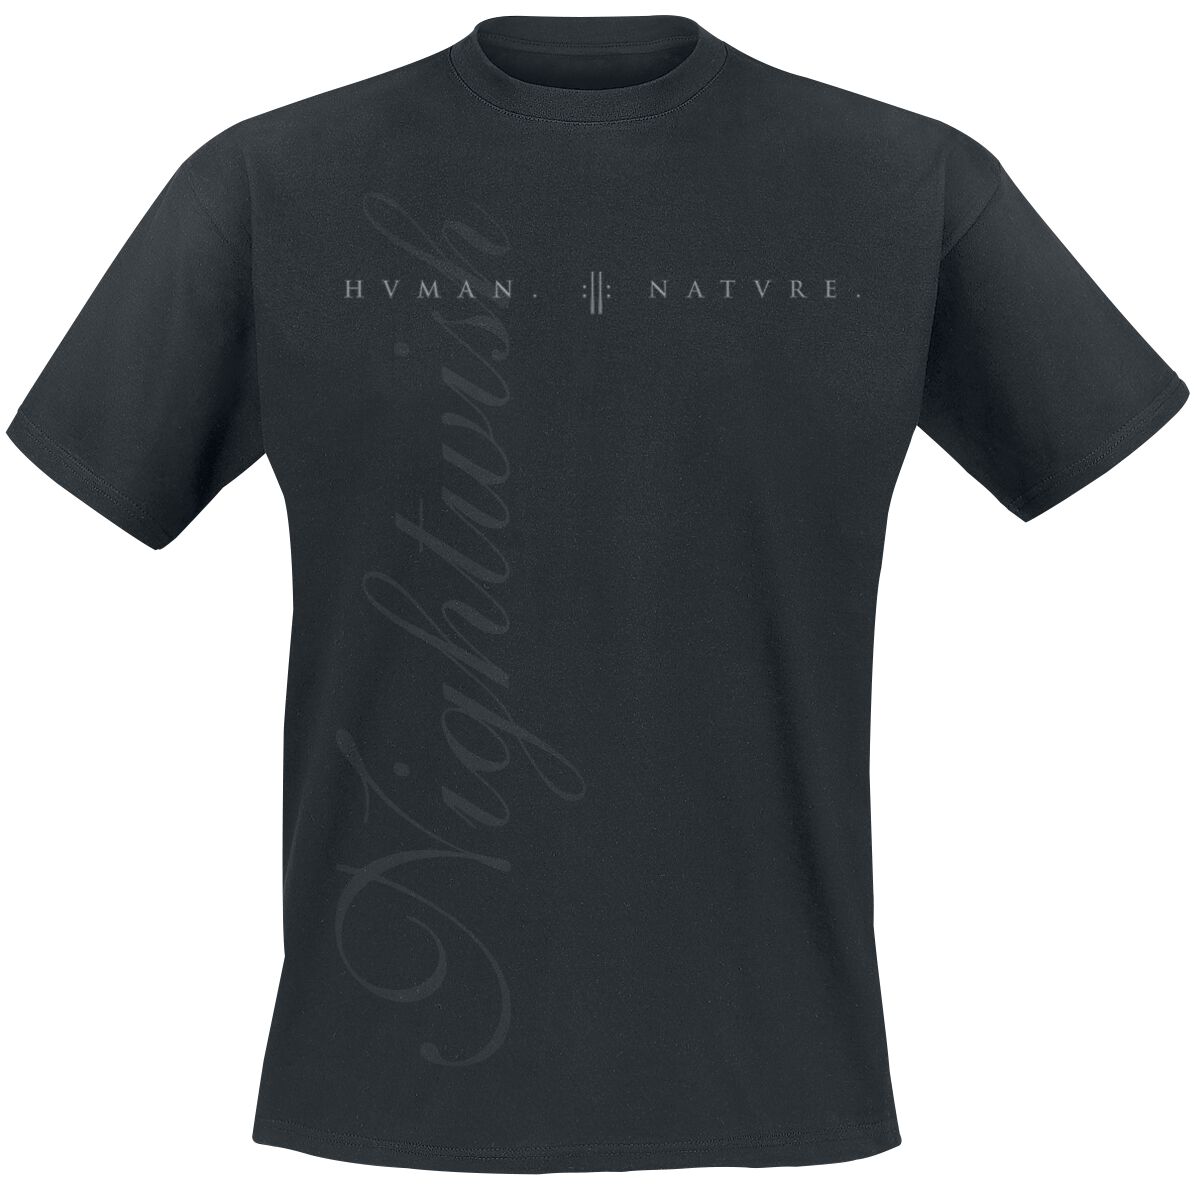 Nightwish T-Shirt - Plain - S bis L - für Männer - Größe L - schwarz  - EMP exklusives Merchandise!